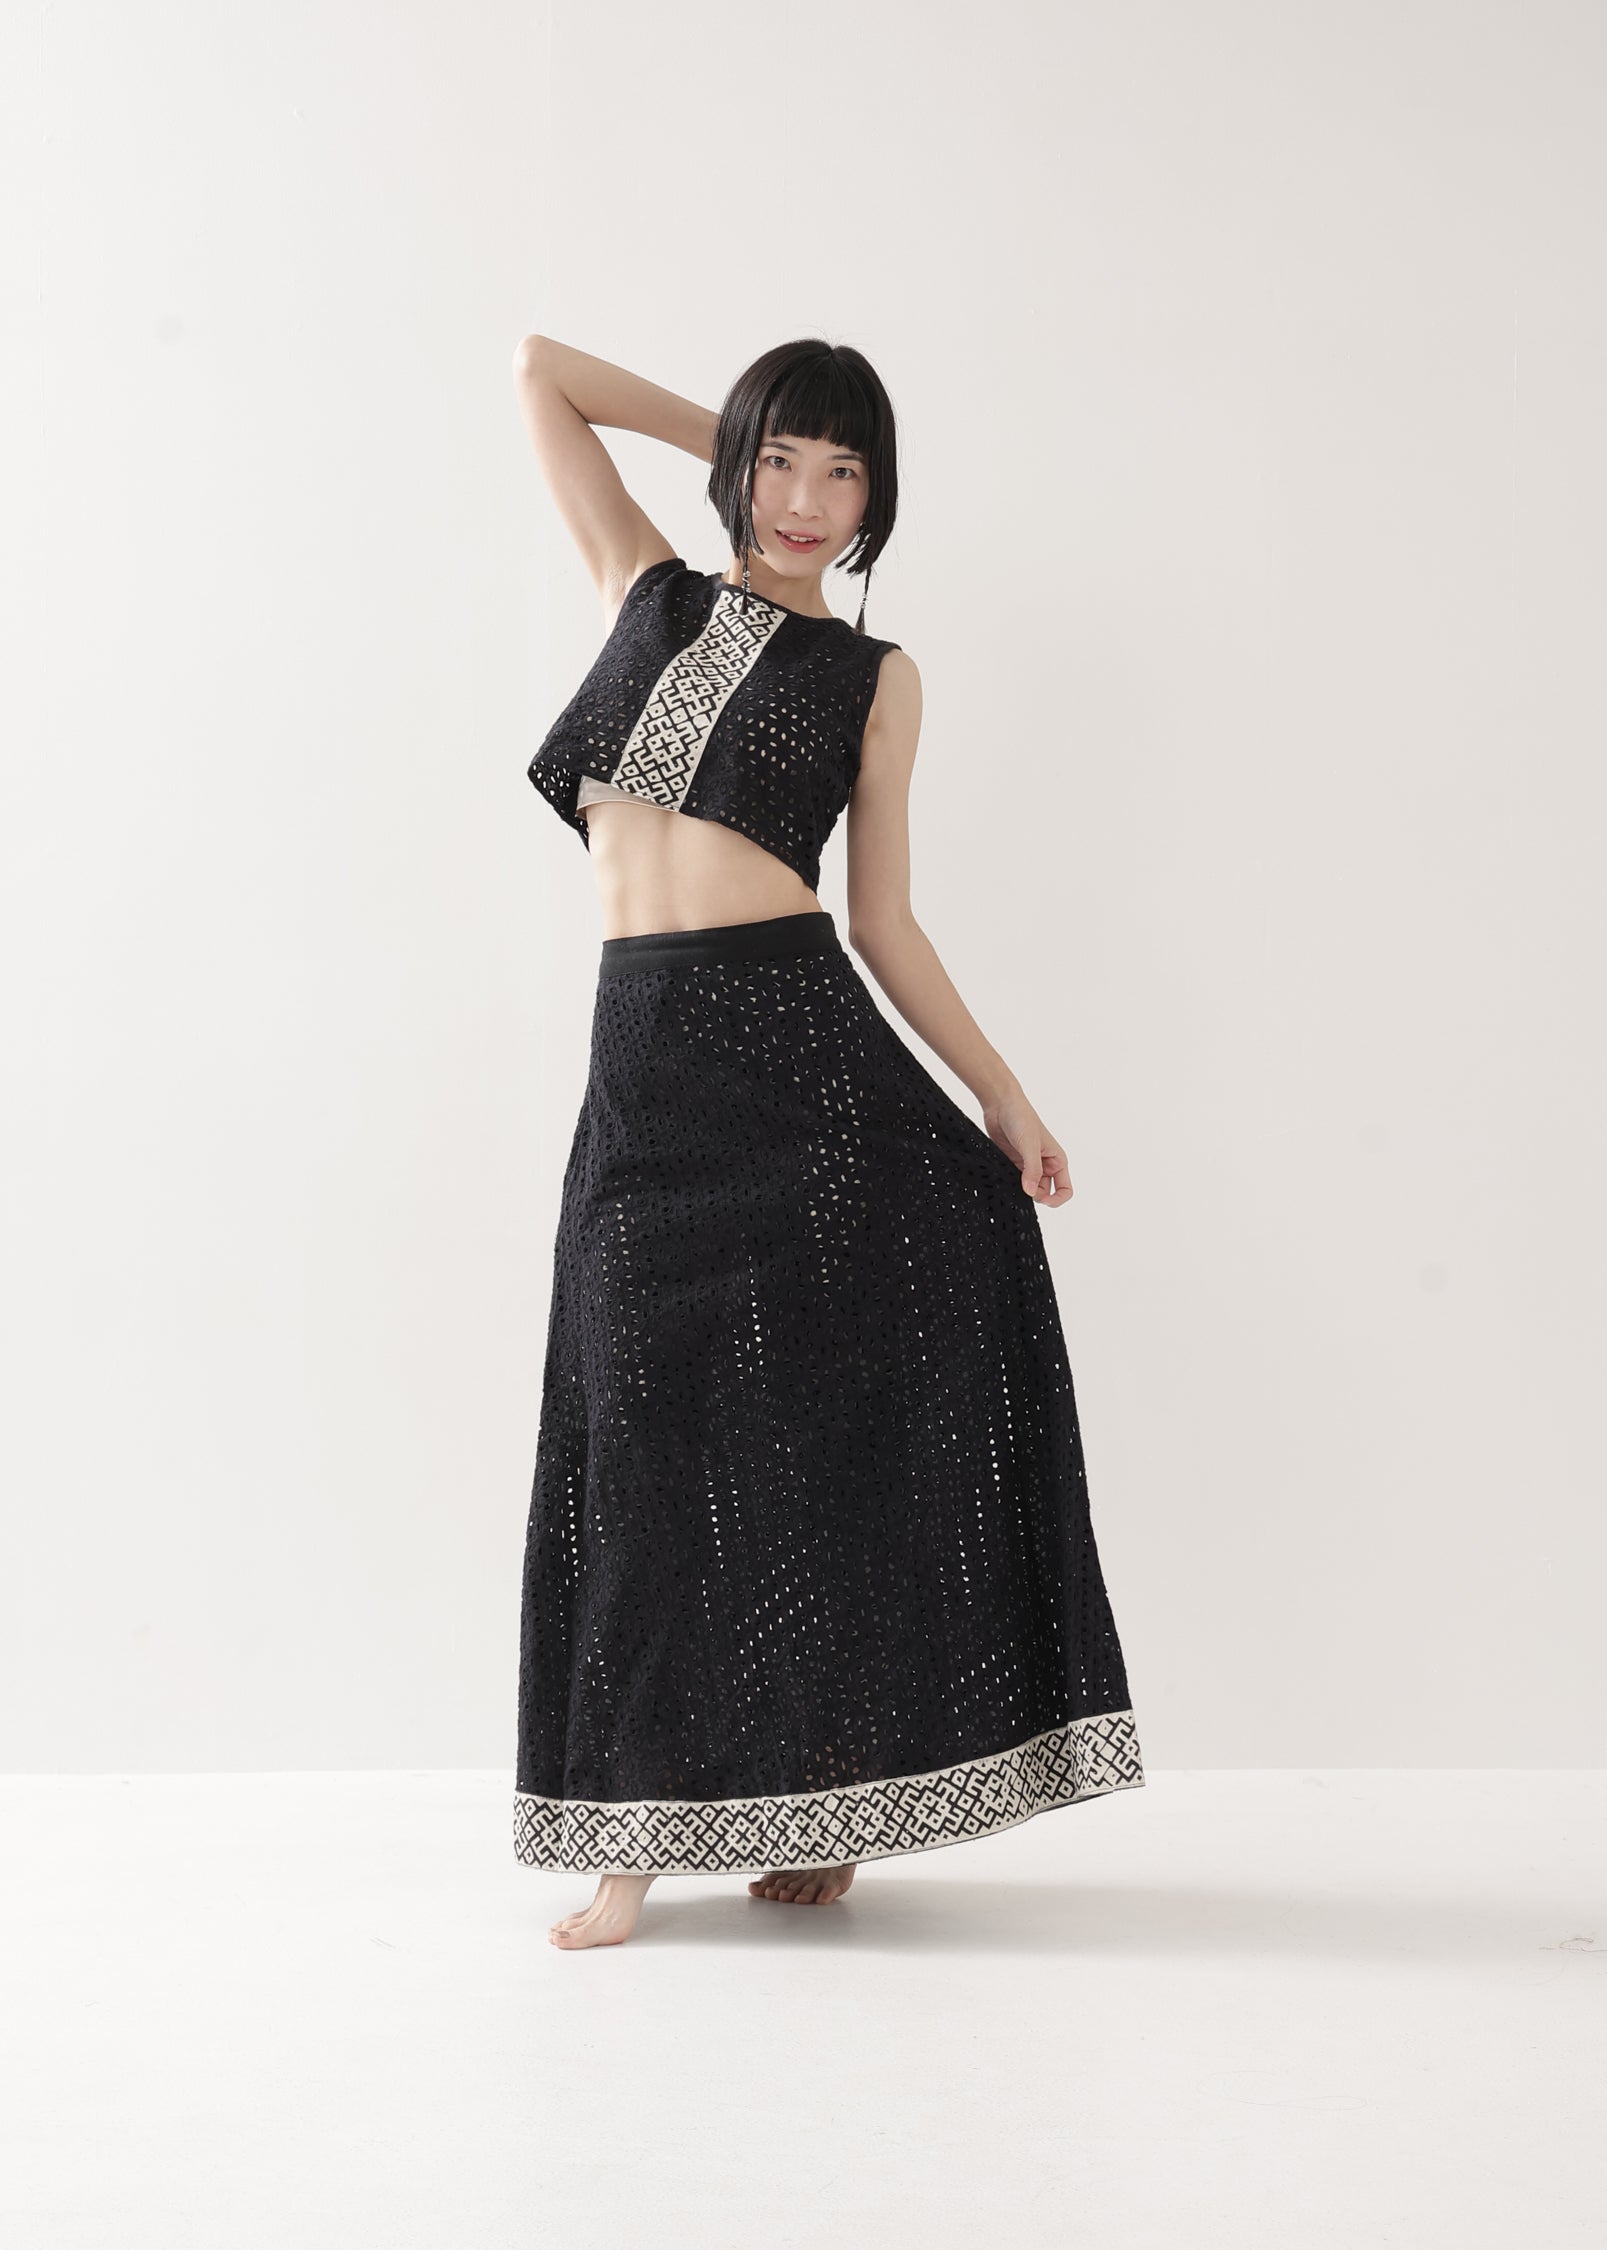 [Dragon Tail] ハコバコットン透かし編みFRACTALデザインスカート